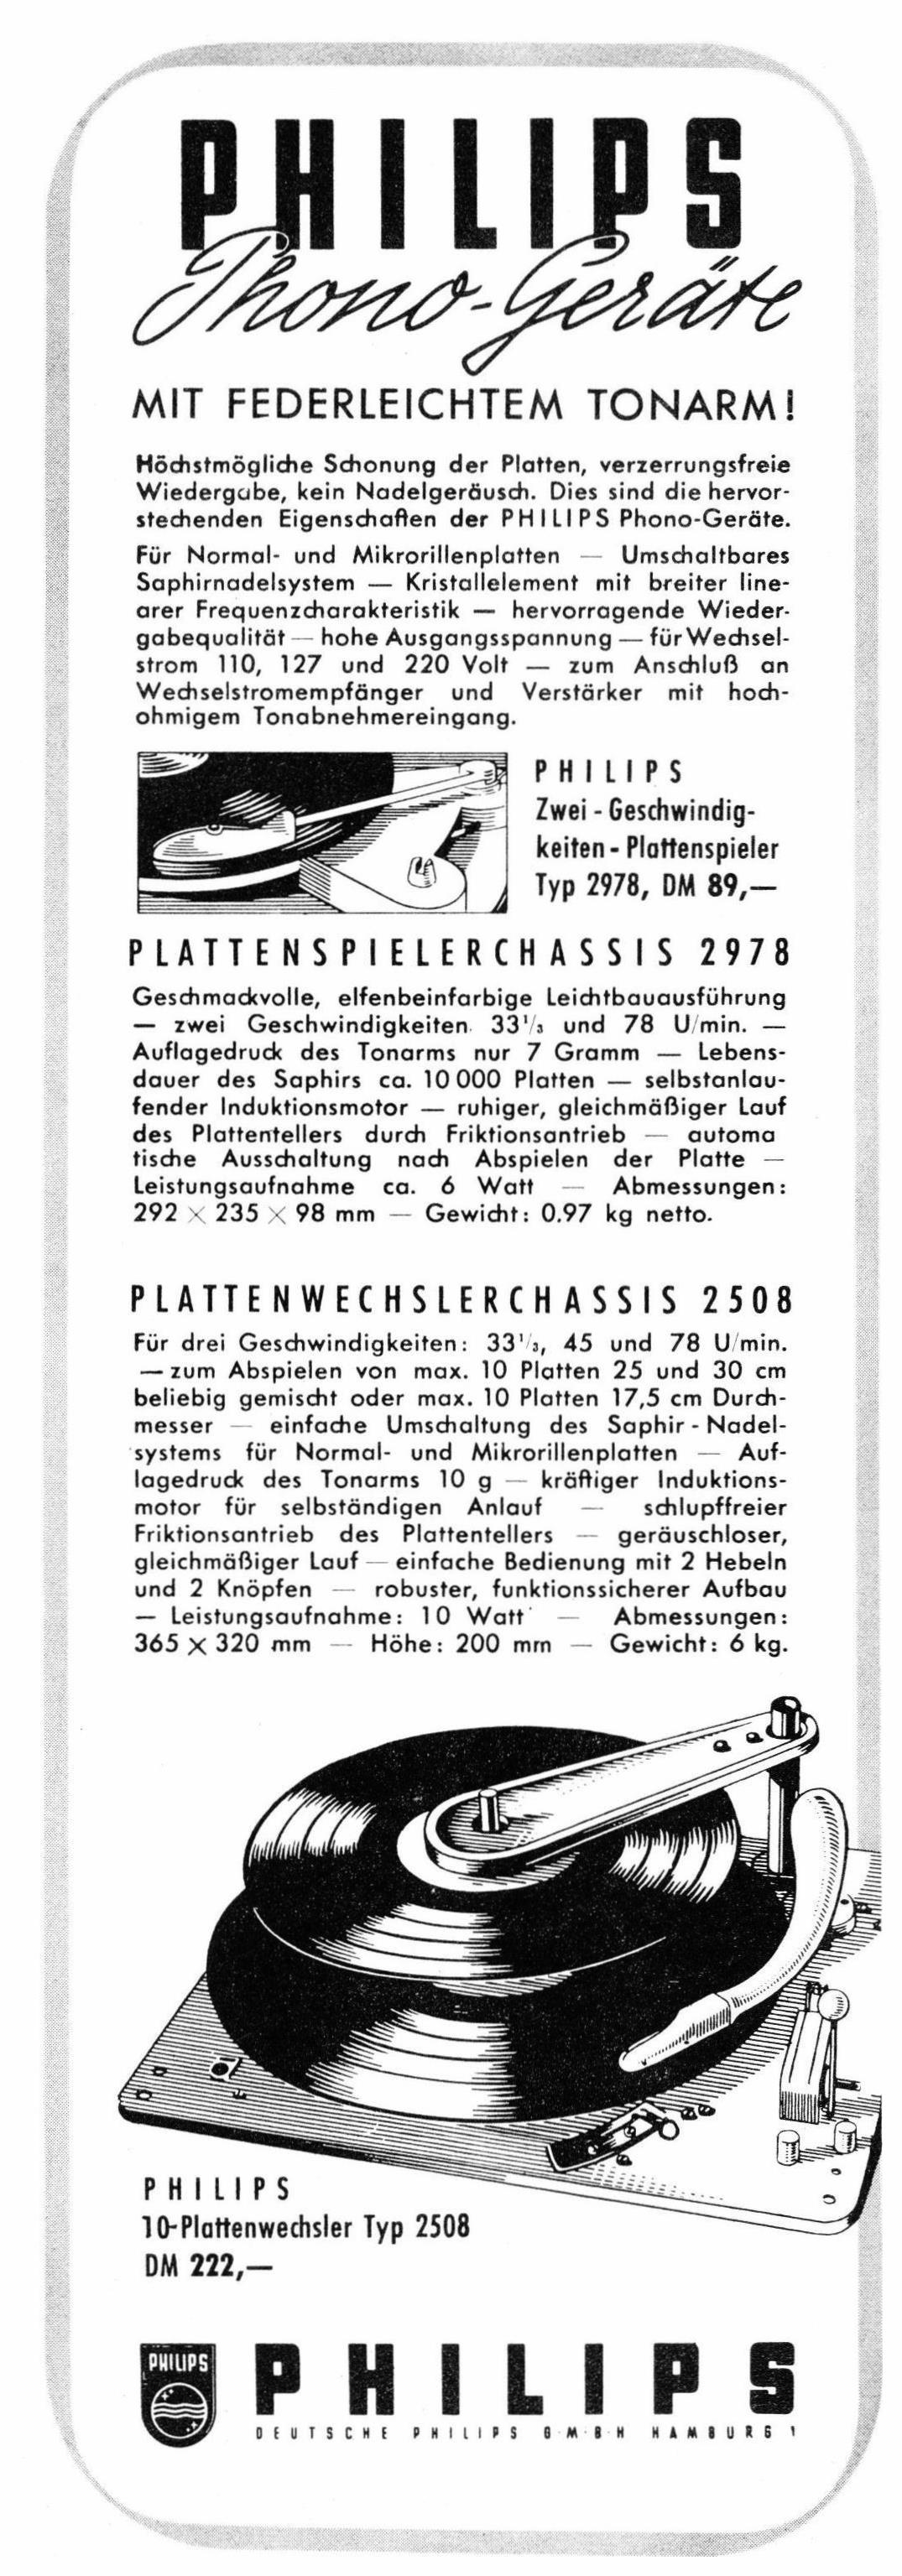 Philips 1952 04.jpg